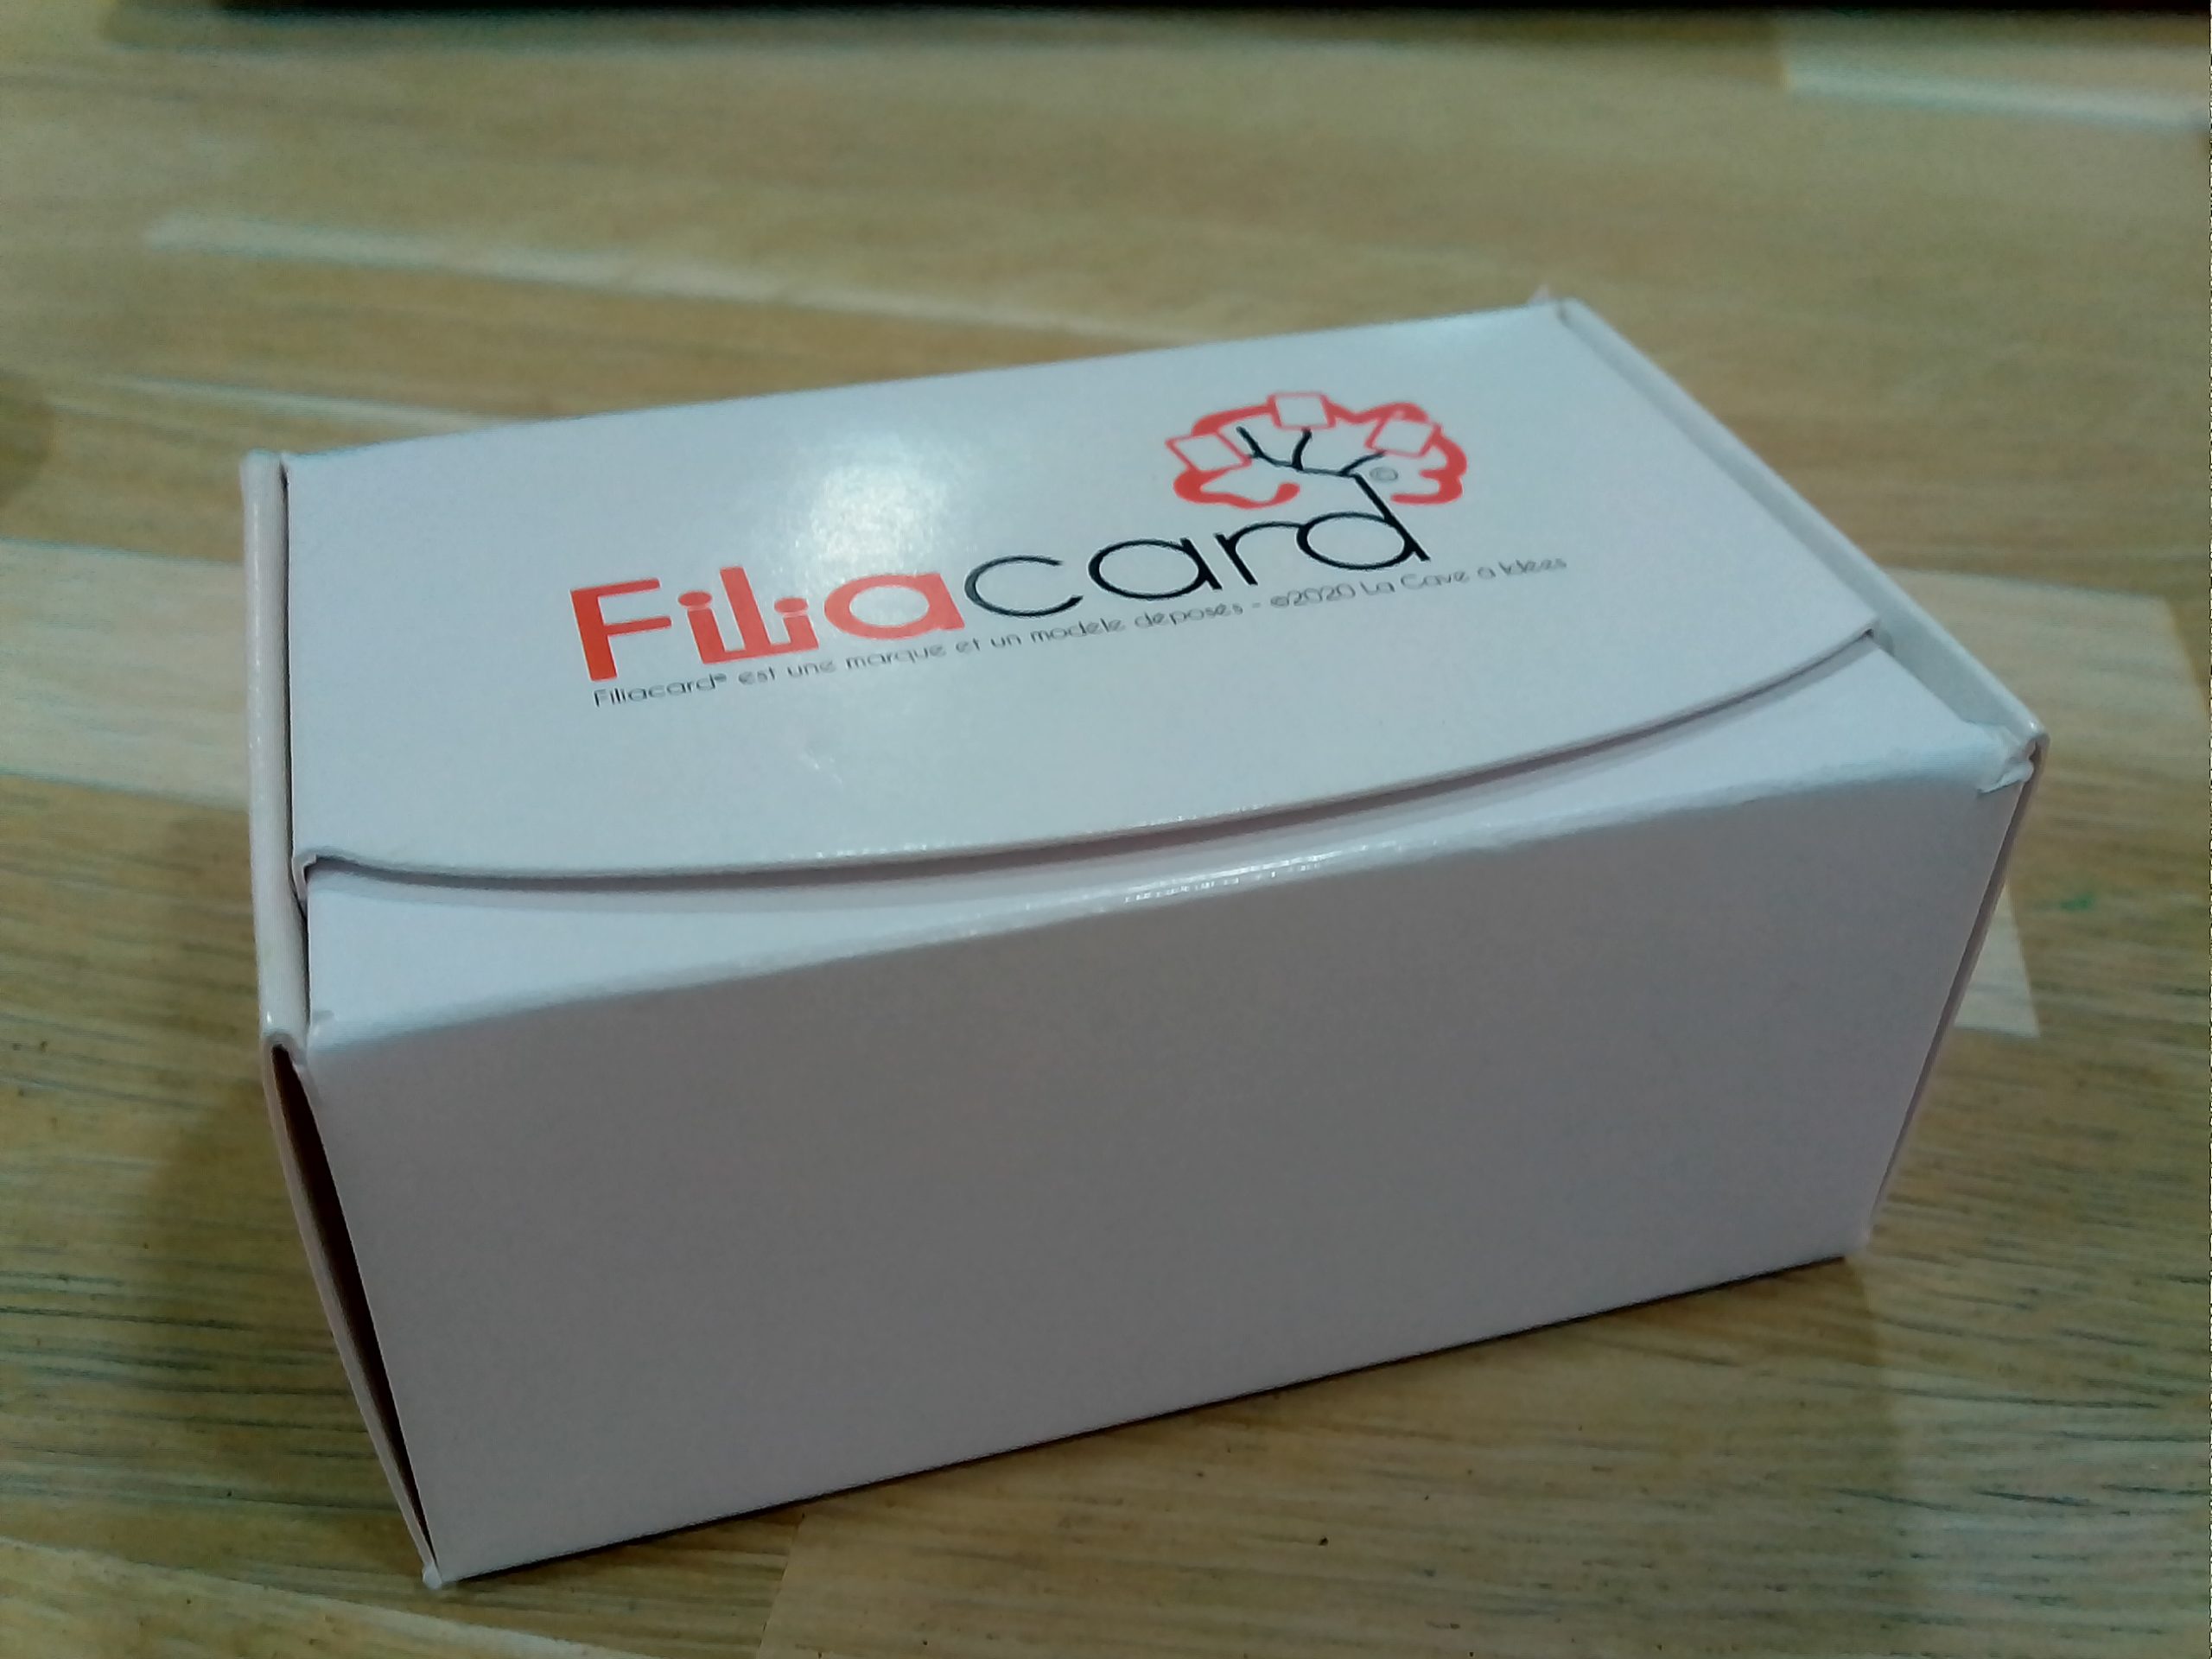 Boîte de cartes Filiacard